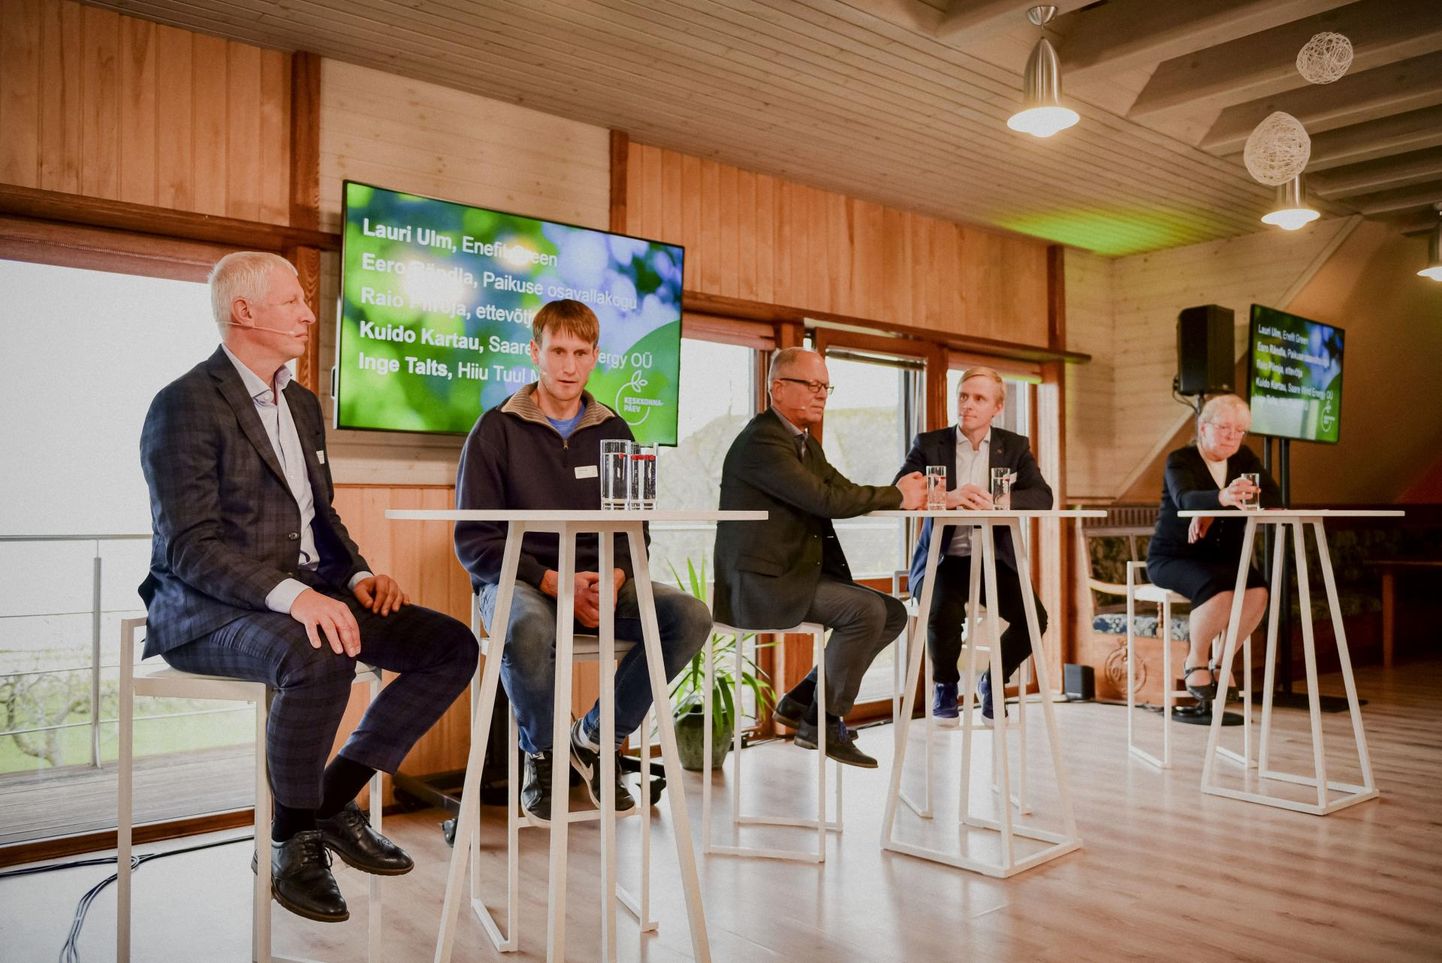 Arutelul “Kas kohalik kasu leevendab mõju kohalikule?” osalesid (vasakult) Kuido Kartau, Raio Piiroja, Eero Rändla, Lauri Ulm ja Inge Talts.